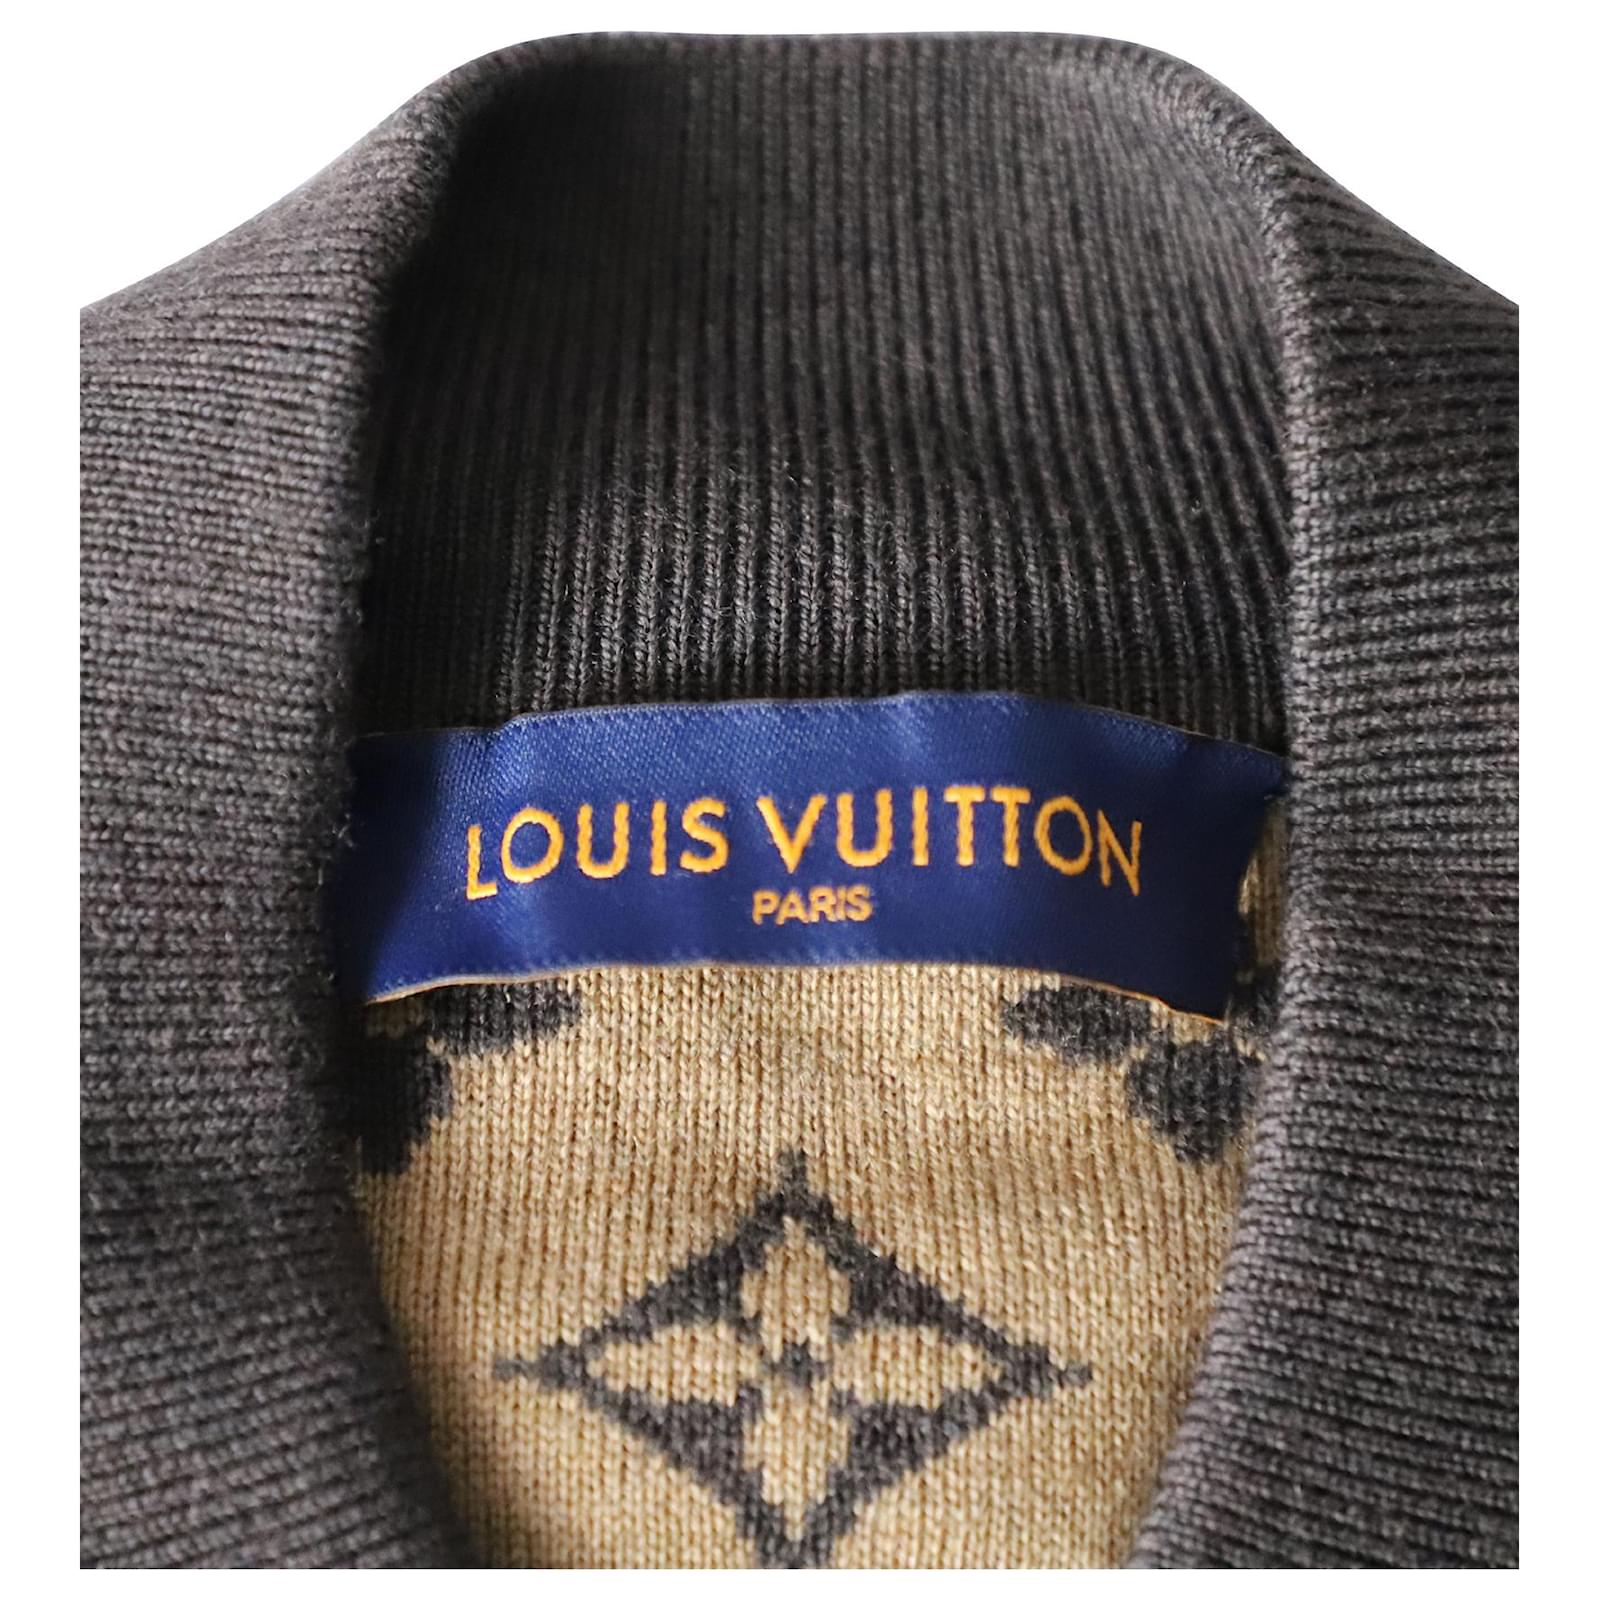 Louis Vuitton 2021 x NBA II Blouson Bomber Jacket w/ Tags - Brown